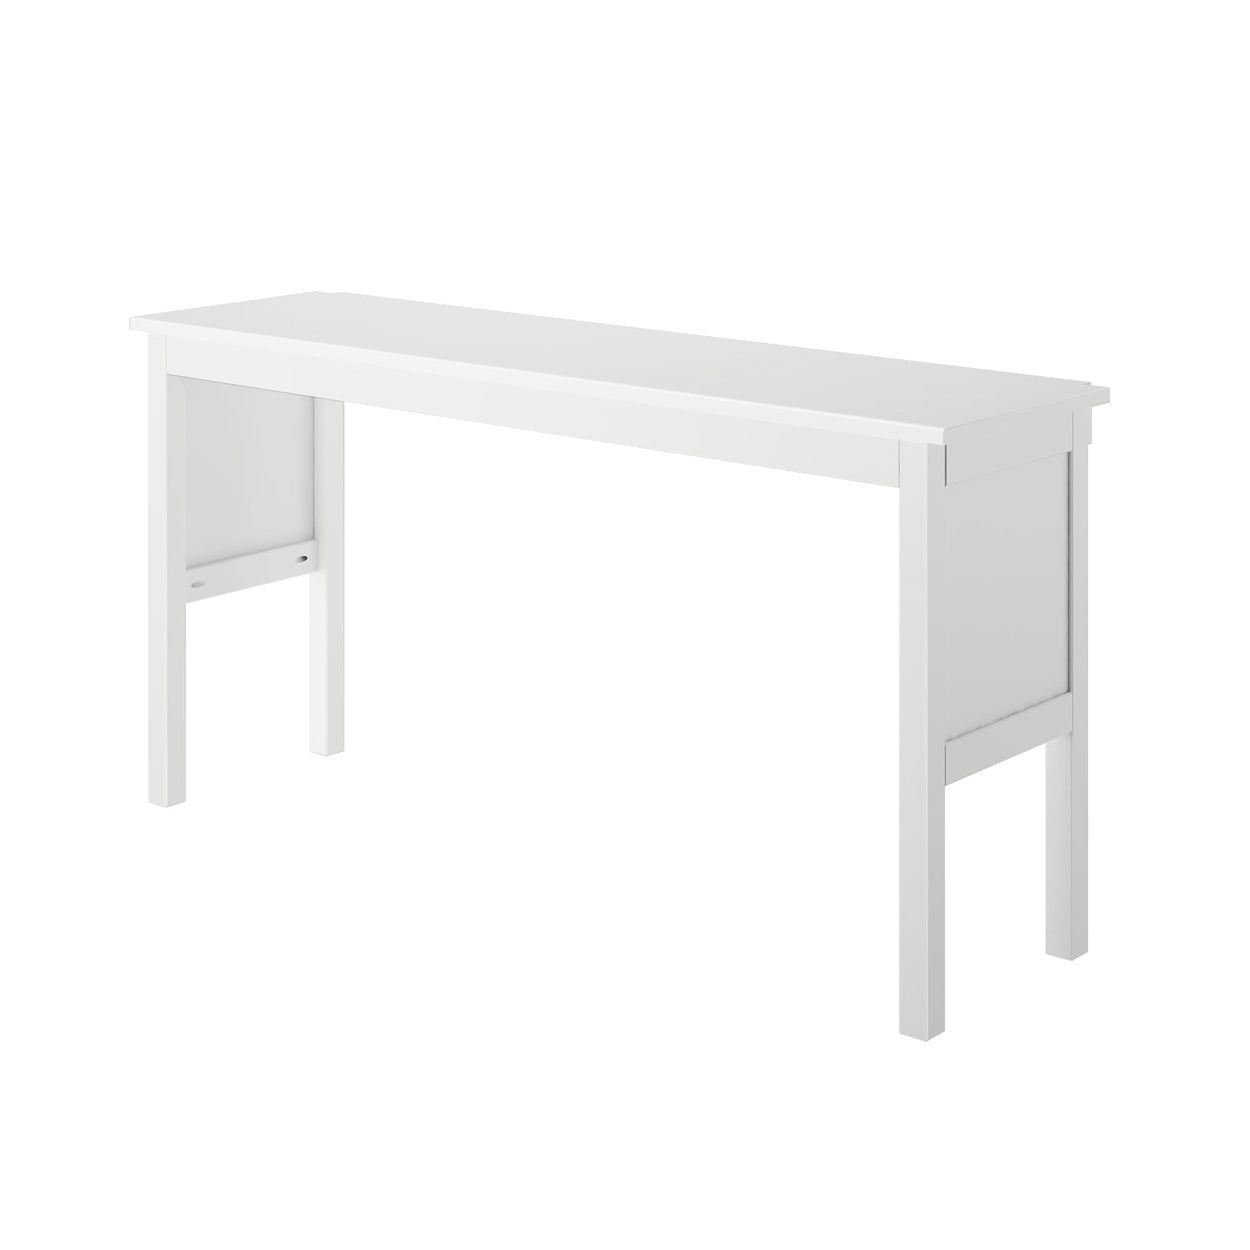 180249-002 : Furniture Desk for Full-Size High Loft Bed, White